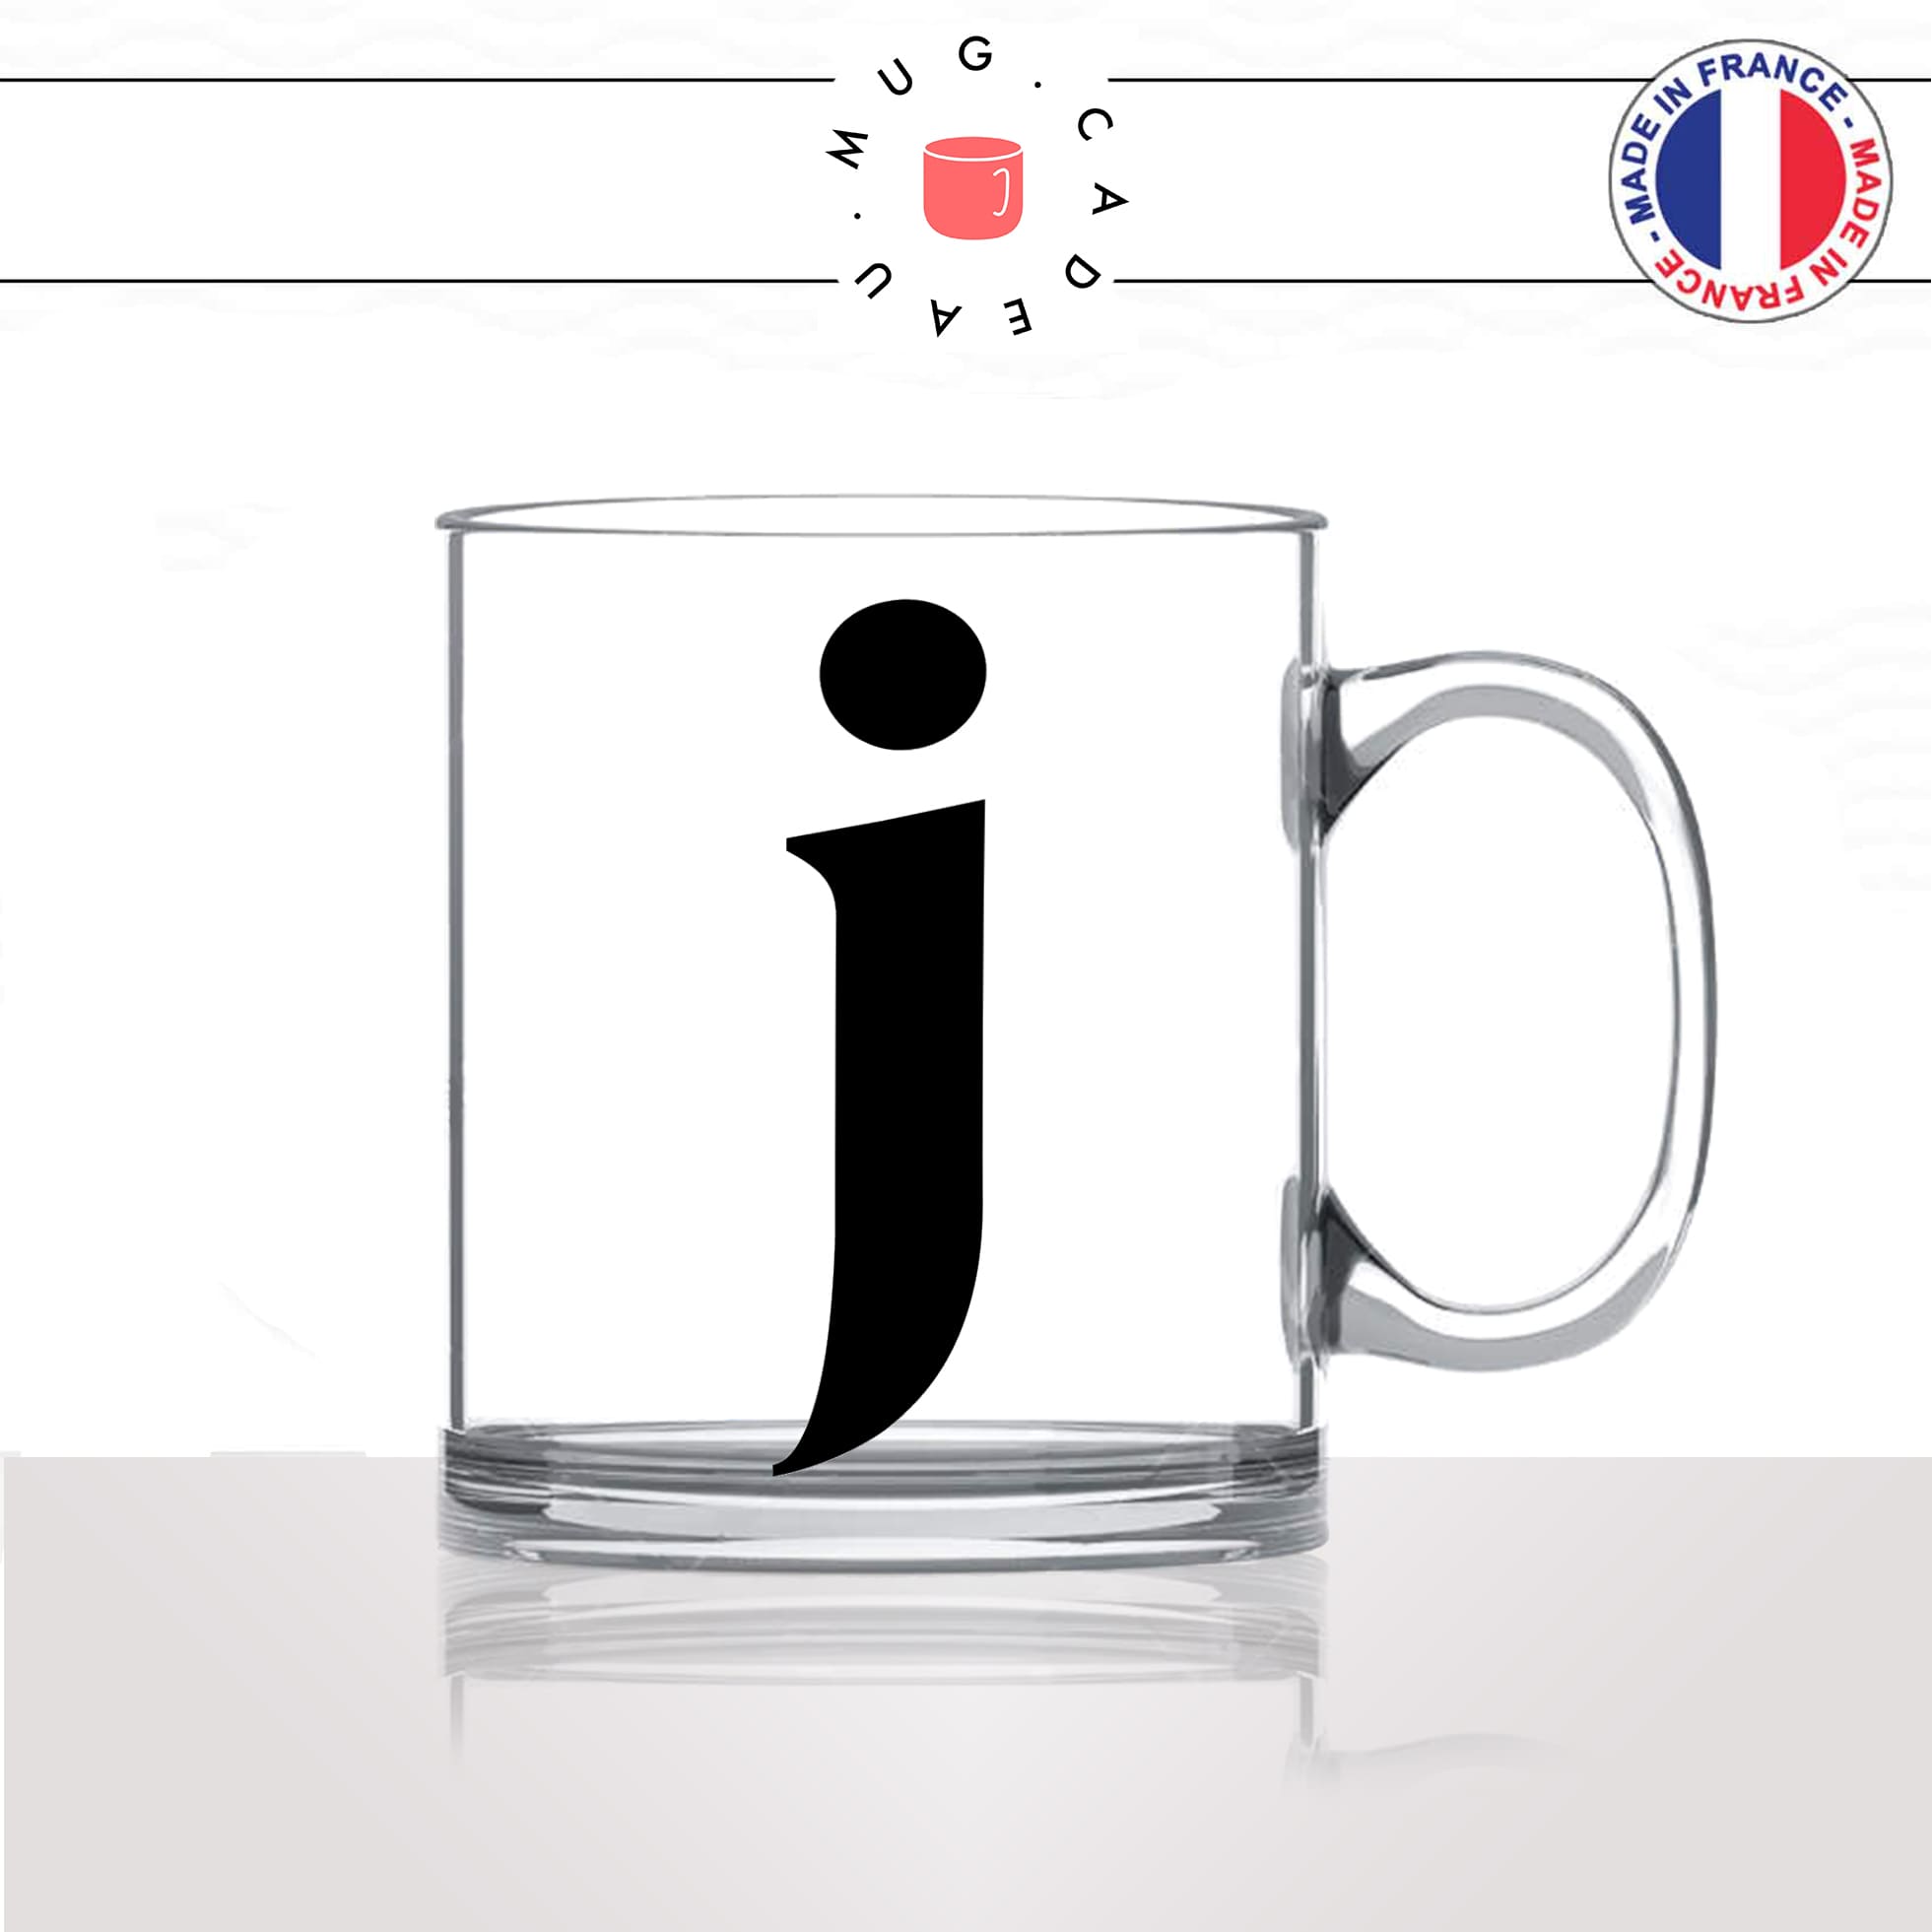 mug-tasse-en-verre-transparent-glass-initiale-J-jean-jeanne-jacques-jacky-majuscule-lettre-collegue-original-idée-cadeau-fun-cool-café-thé2